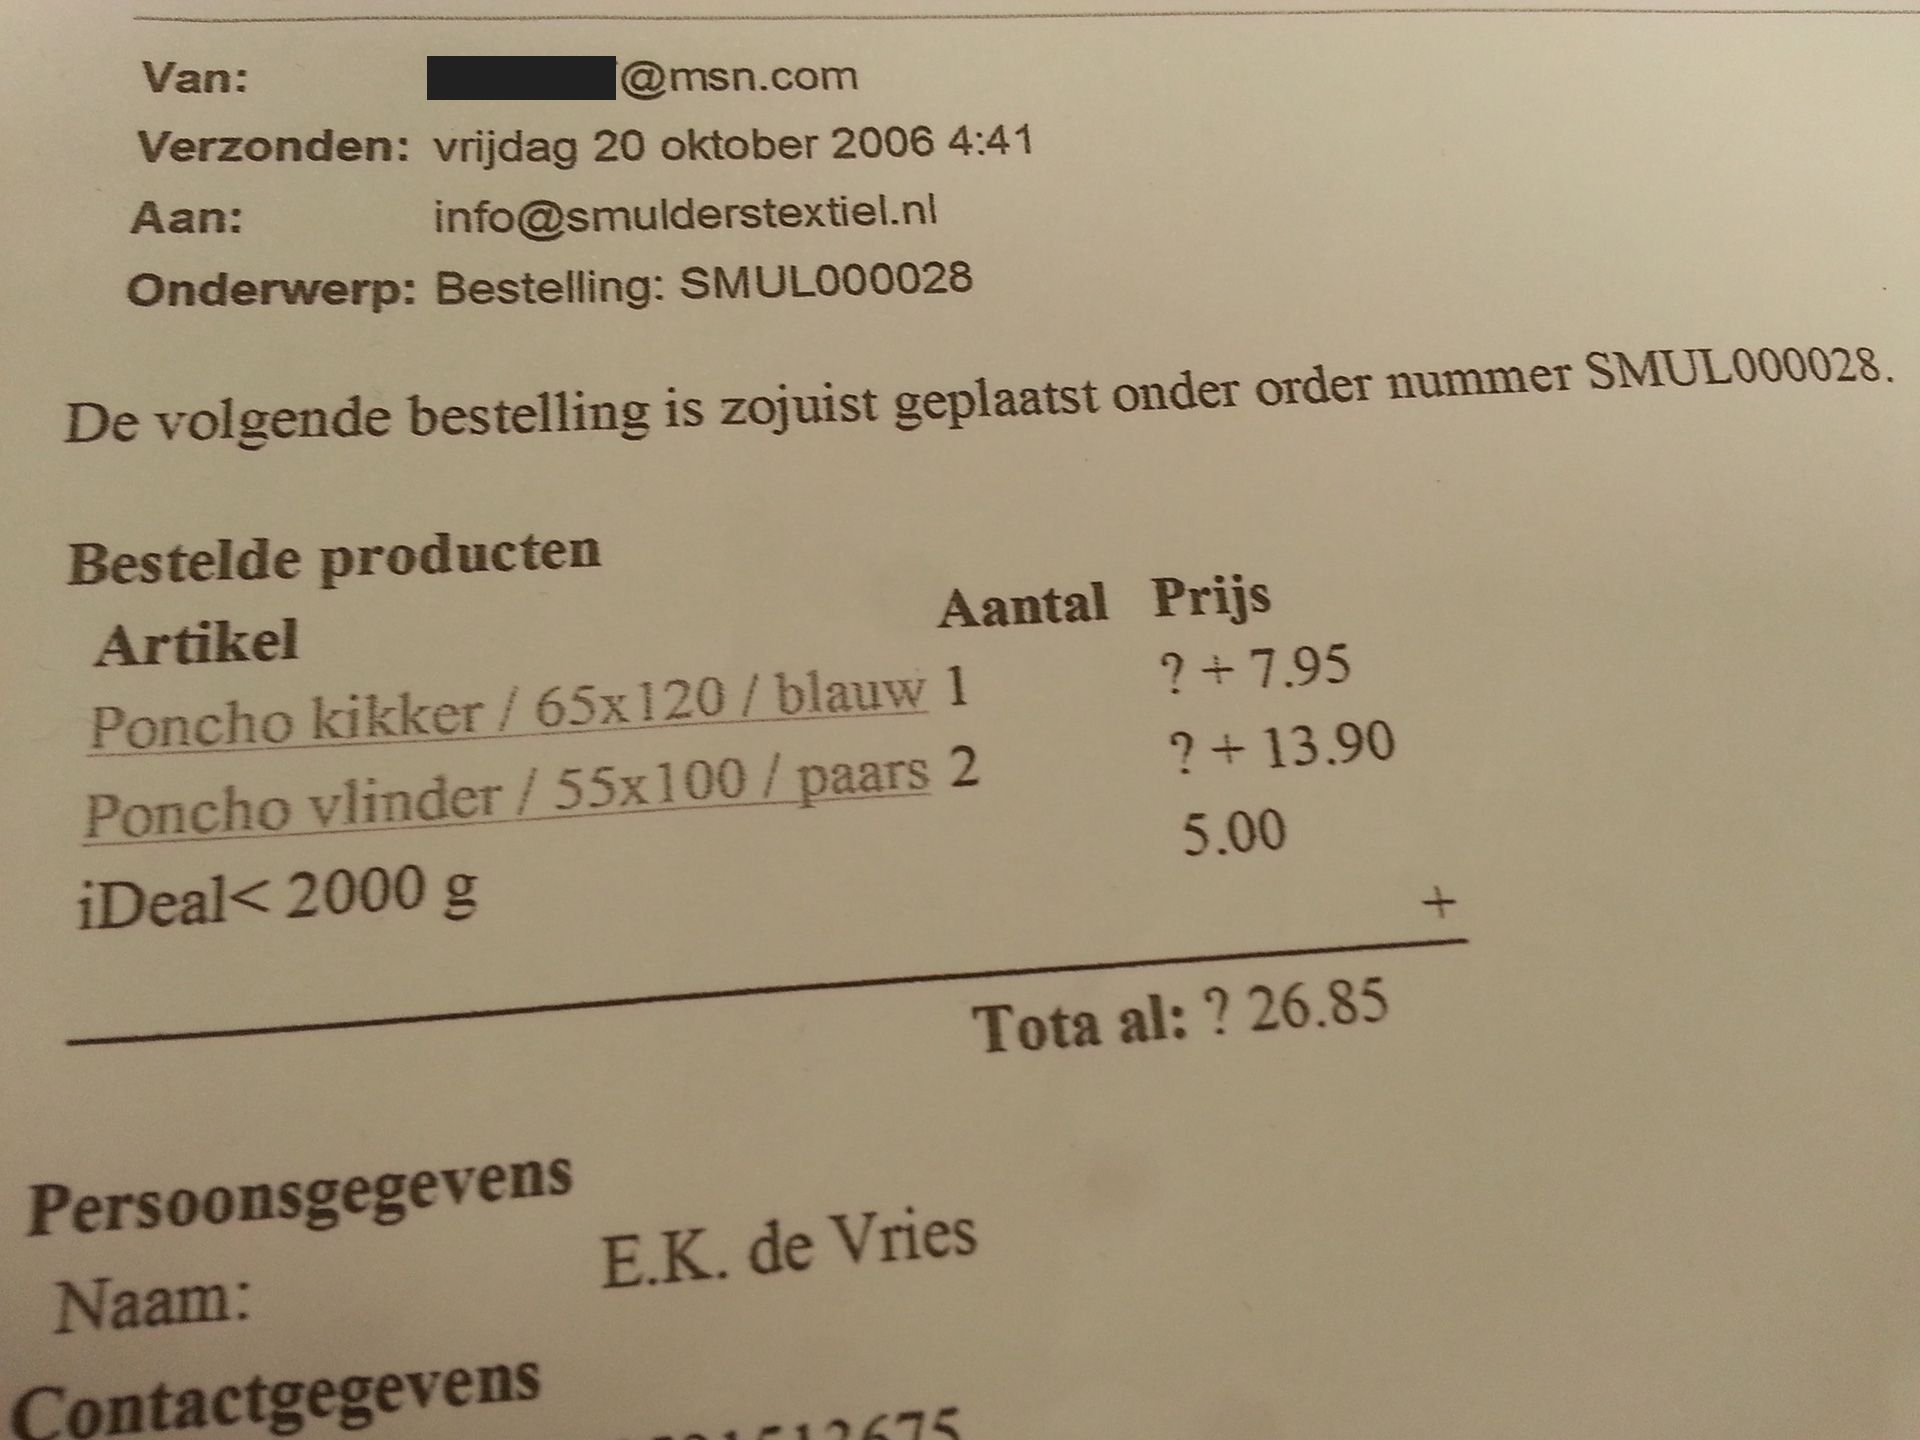 20 oktober 2006, 04.41 uur. De allereerste bestelling op Smulderstextiel.nl.